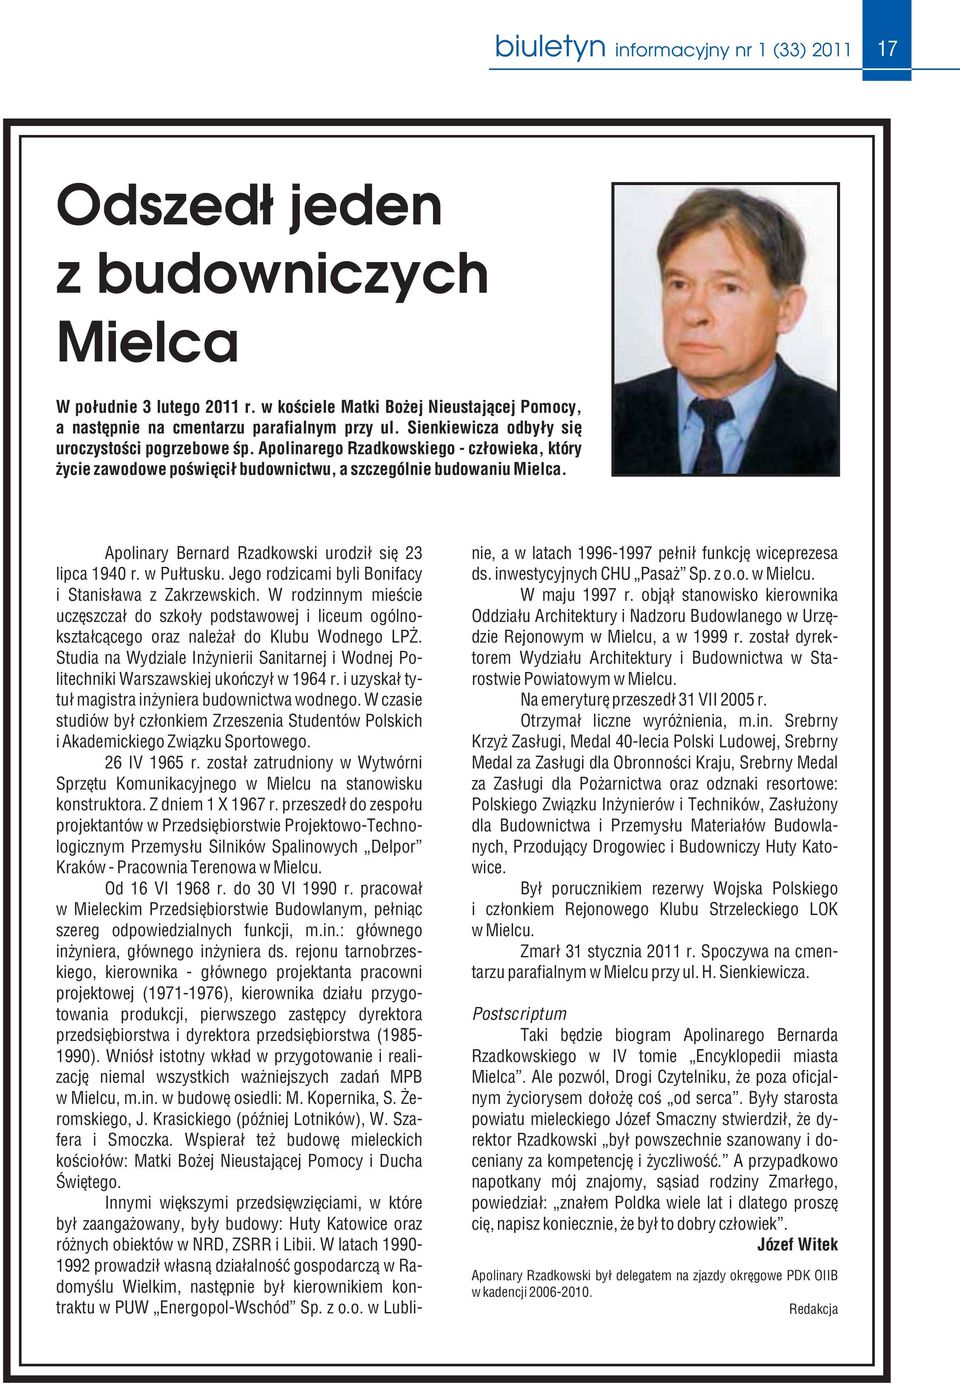 Apolinary Bernard Rzadkowski urodził się 23 lipca 1940 r. w Pułtusku. Jego rodzicami byli Bonifacy i Stanisława z Zakrzewskich.